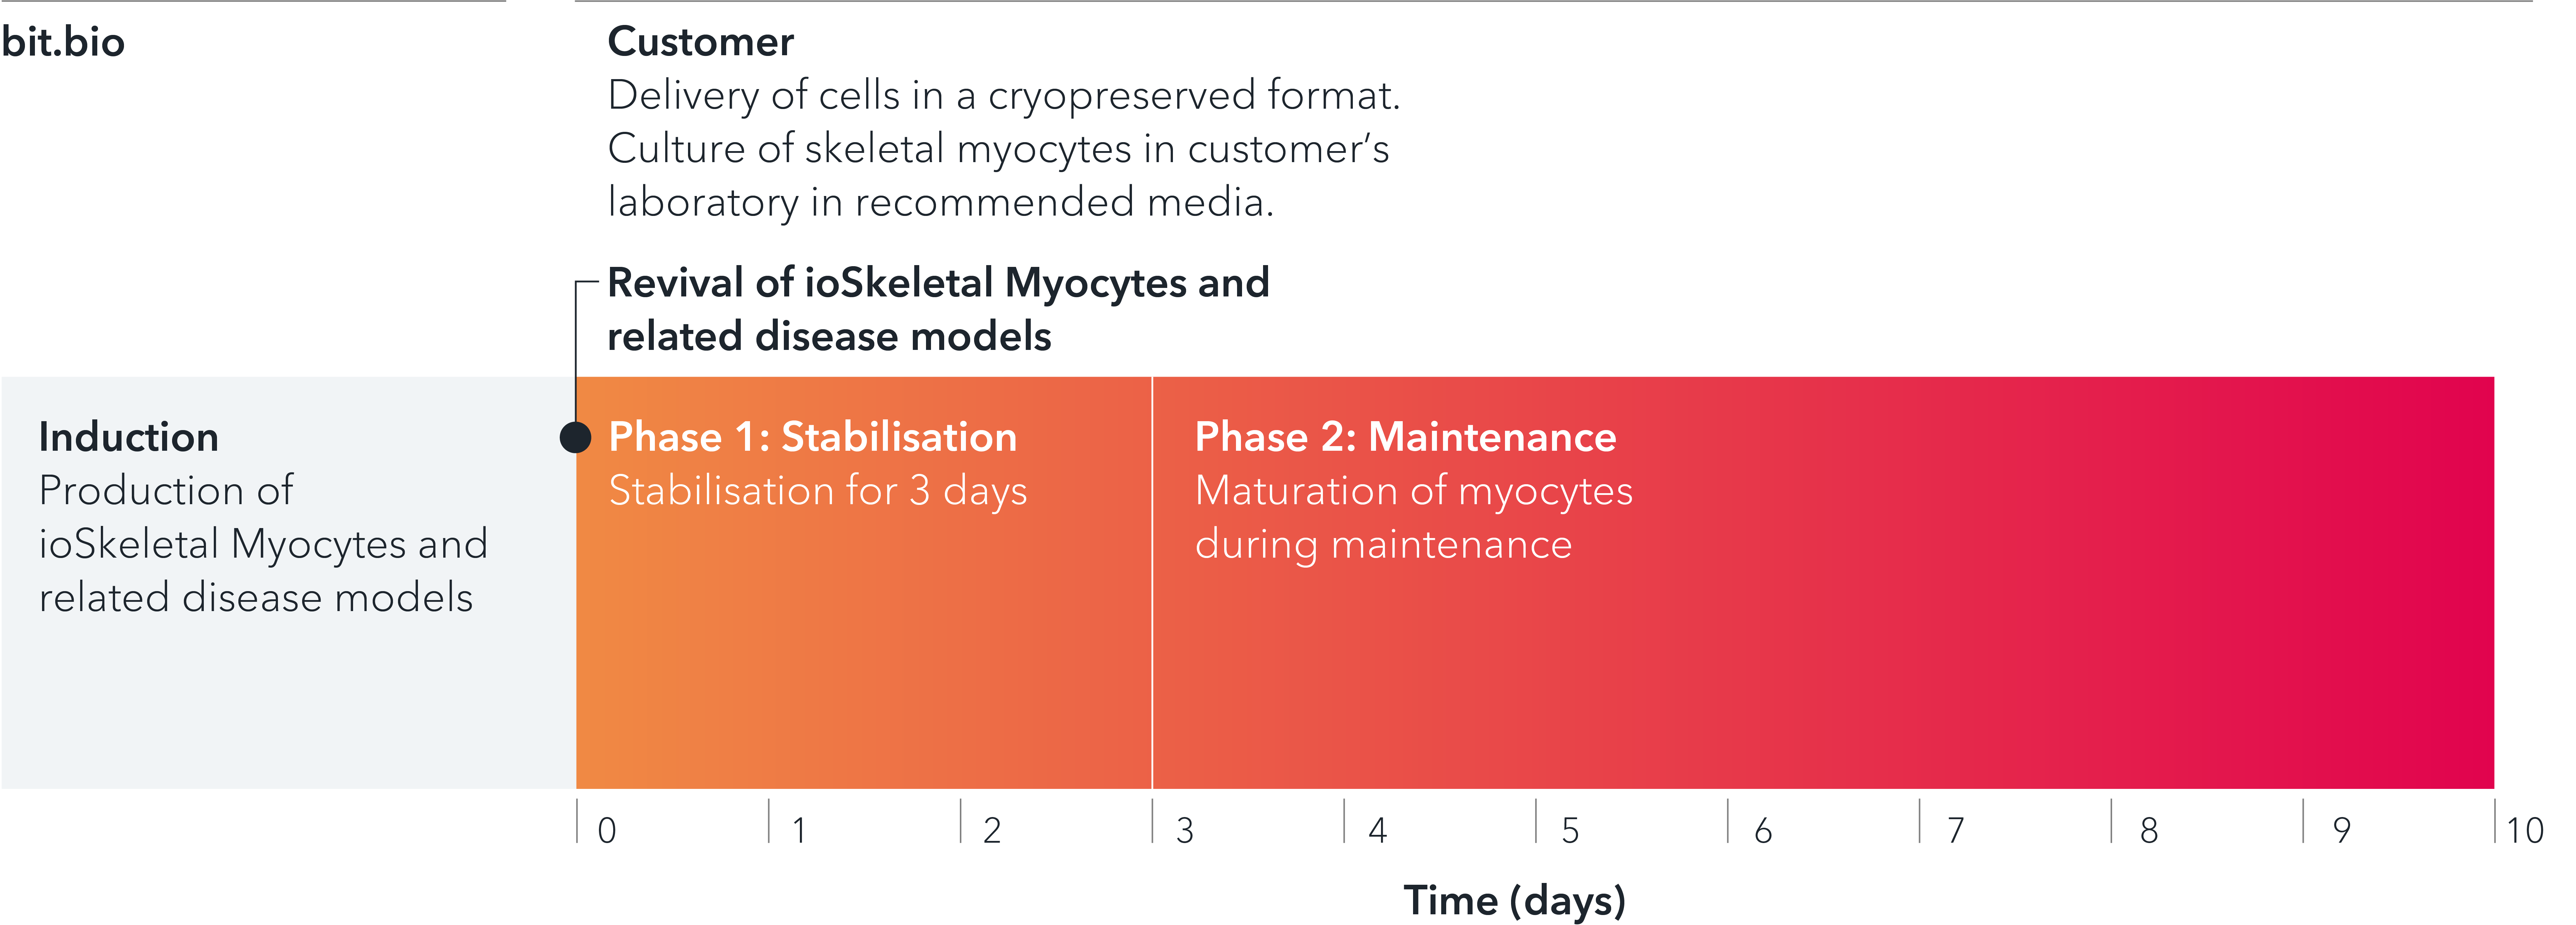 bit.bio_ioSkeletal_Myocytes_with_disease_models_timeline